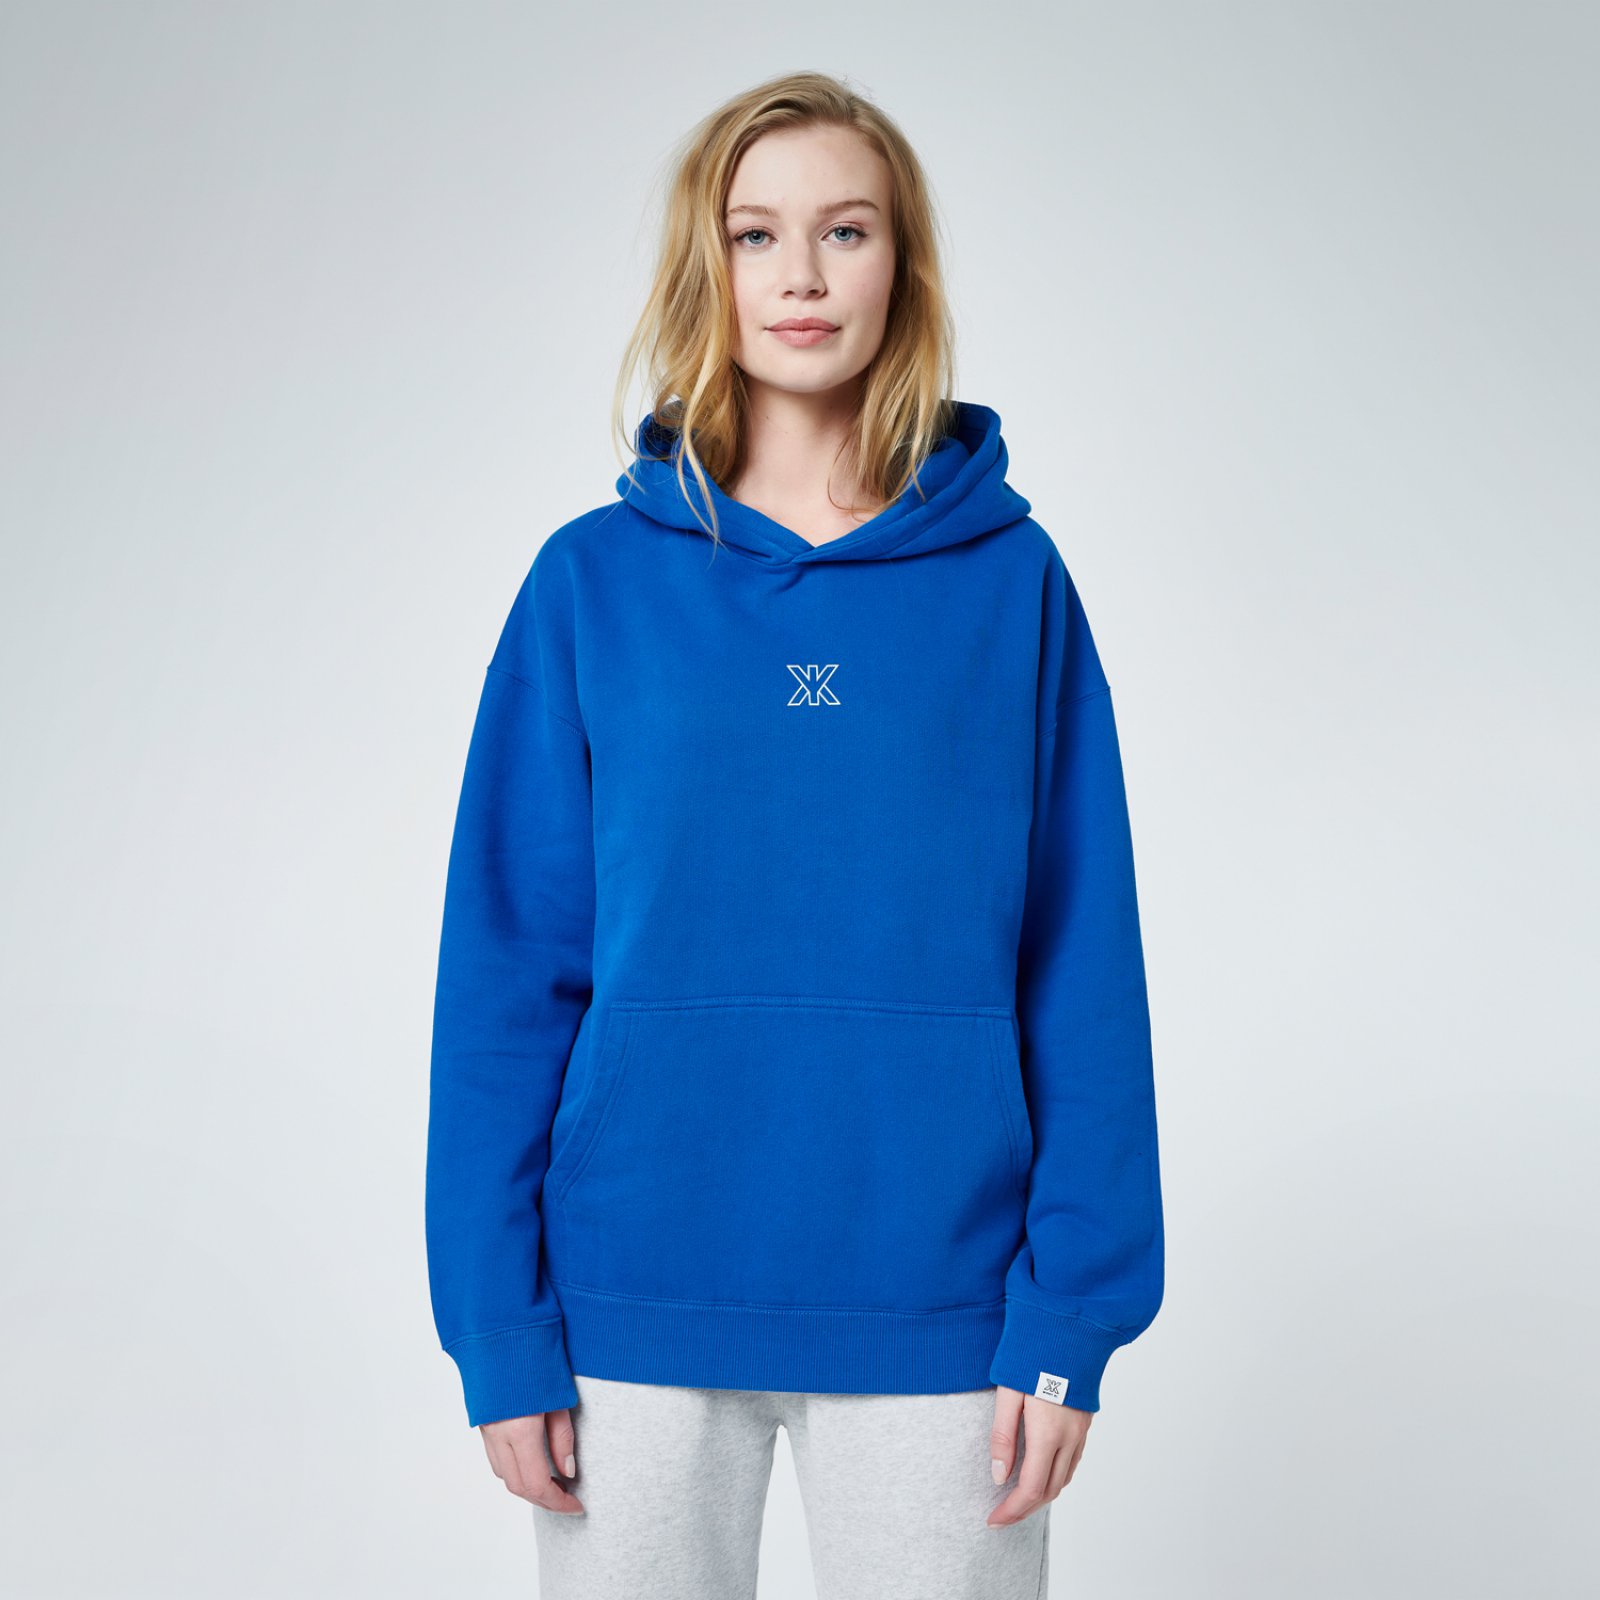 KI. hoodie back | blue / MIKKY KI